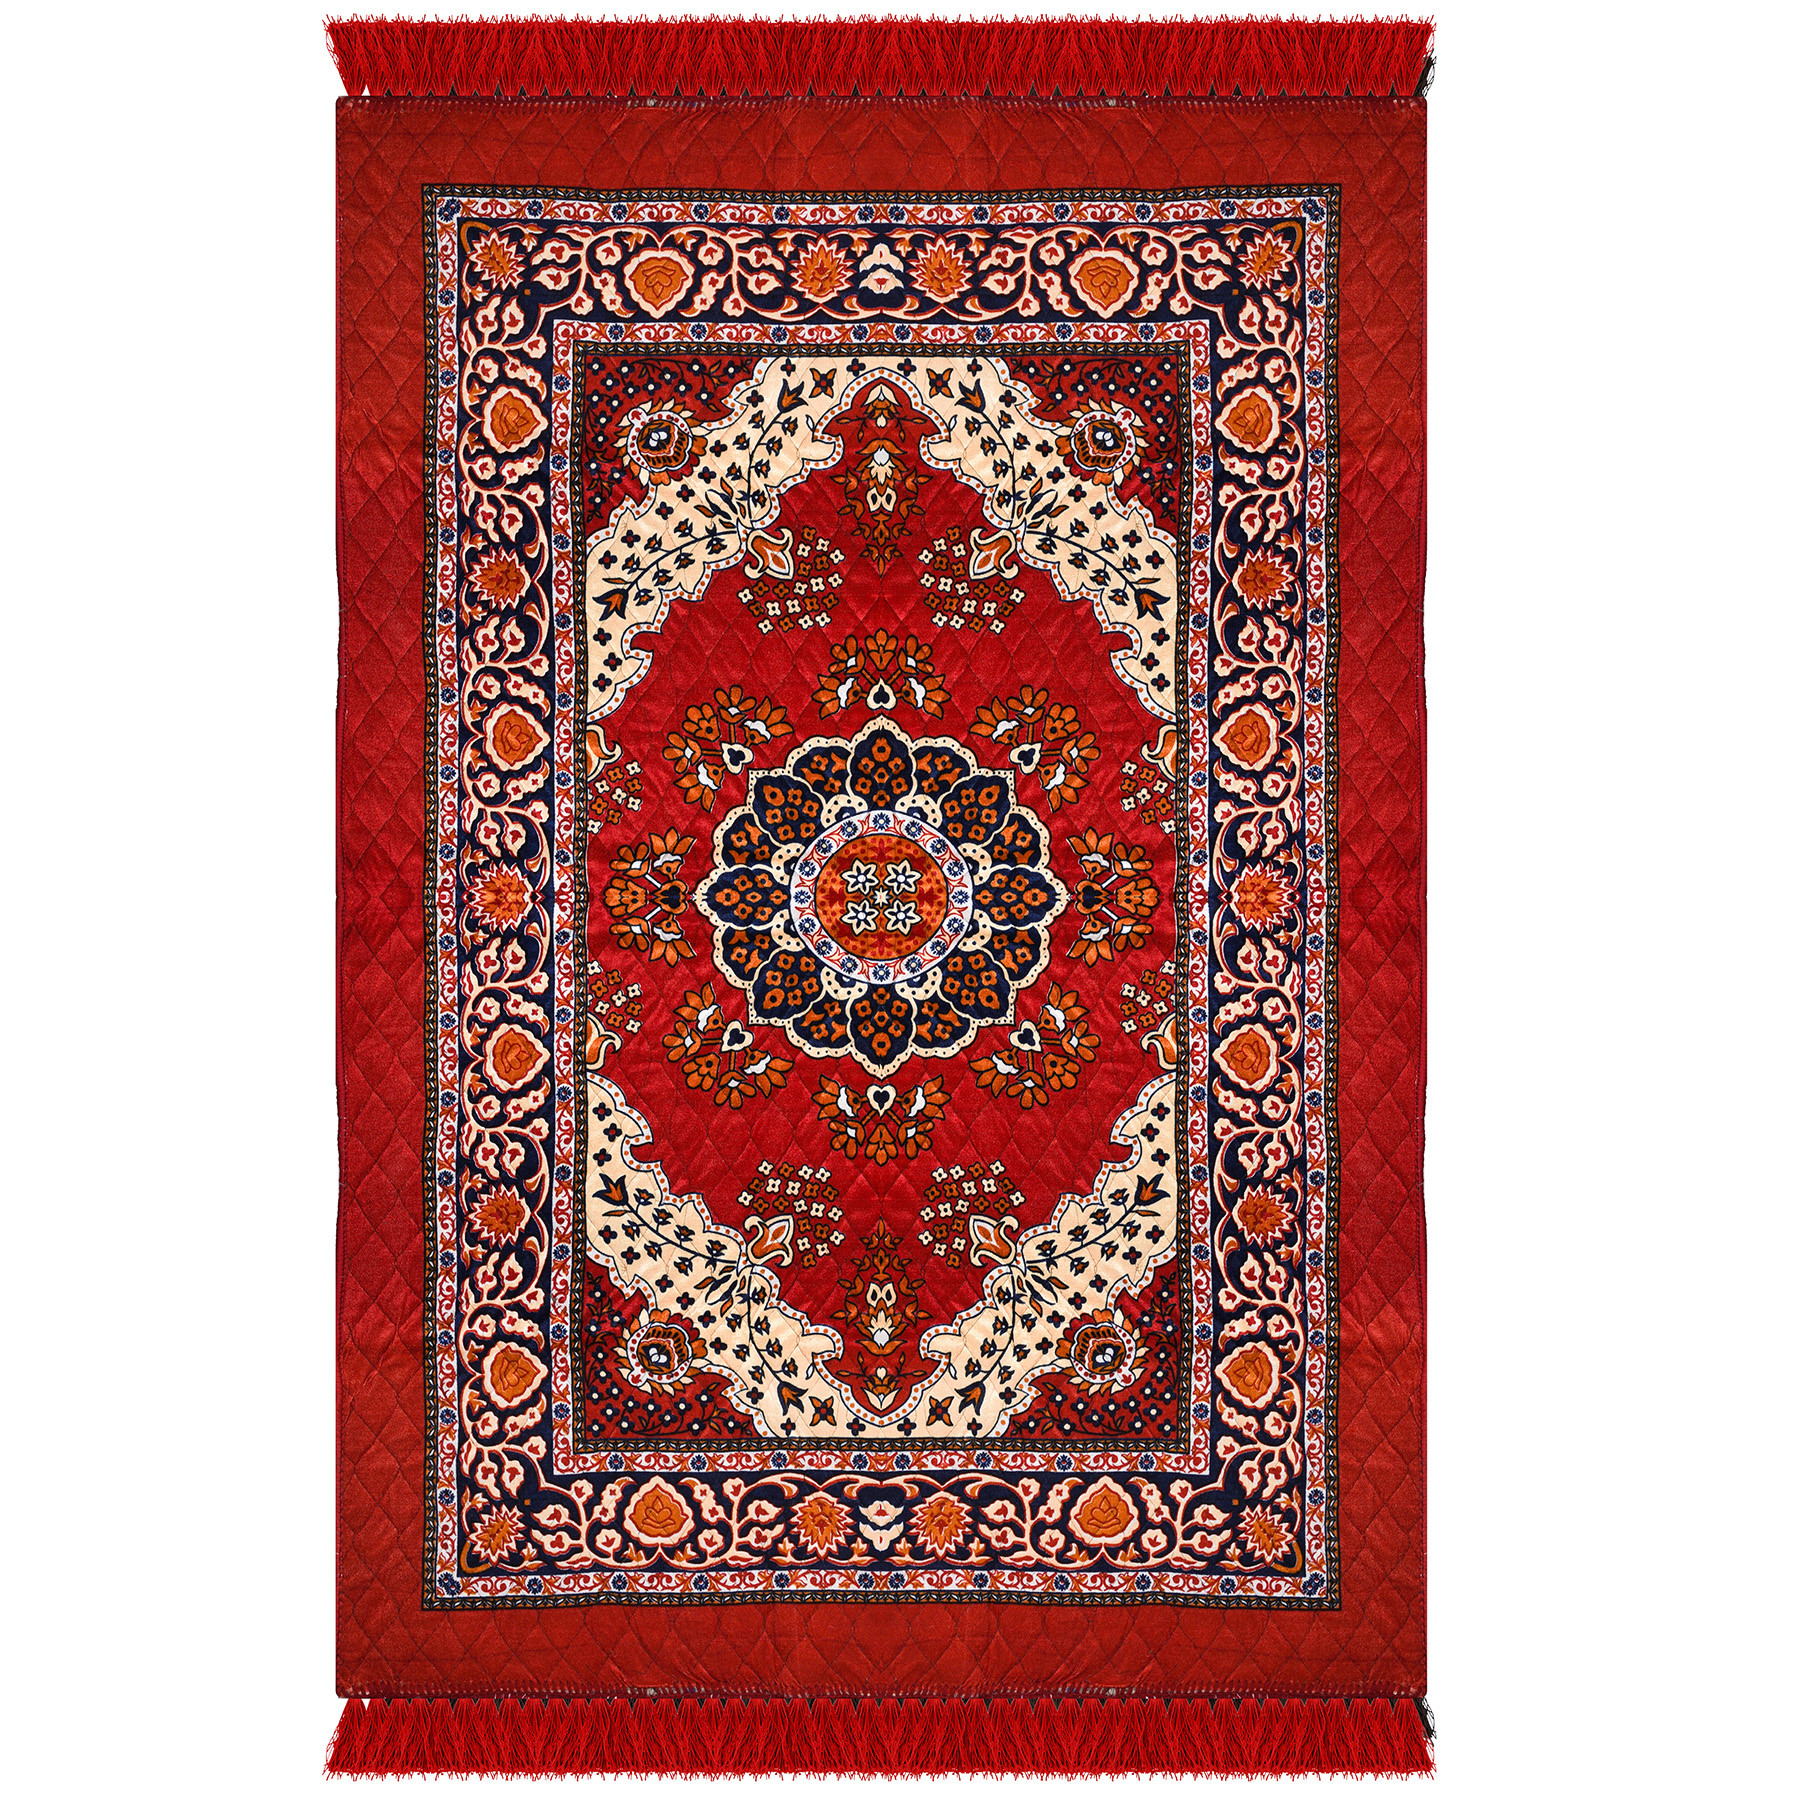 Kuber Industries Carpet | Velvet Carpet-Rug for Home Décor | Carpet Rug for Bedroom | Carpet for Living Room | Prayer-Yoga Mat | Carpet for Hall | 4x6 Ft | Red